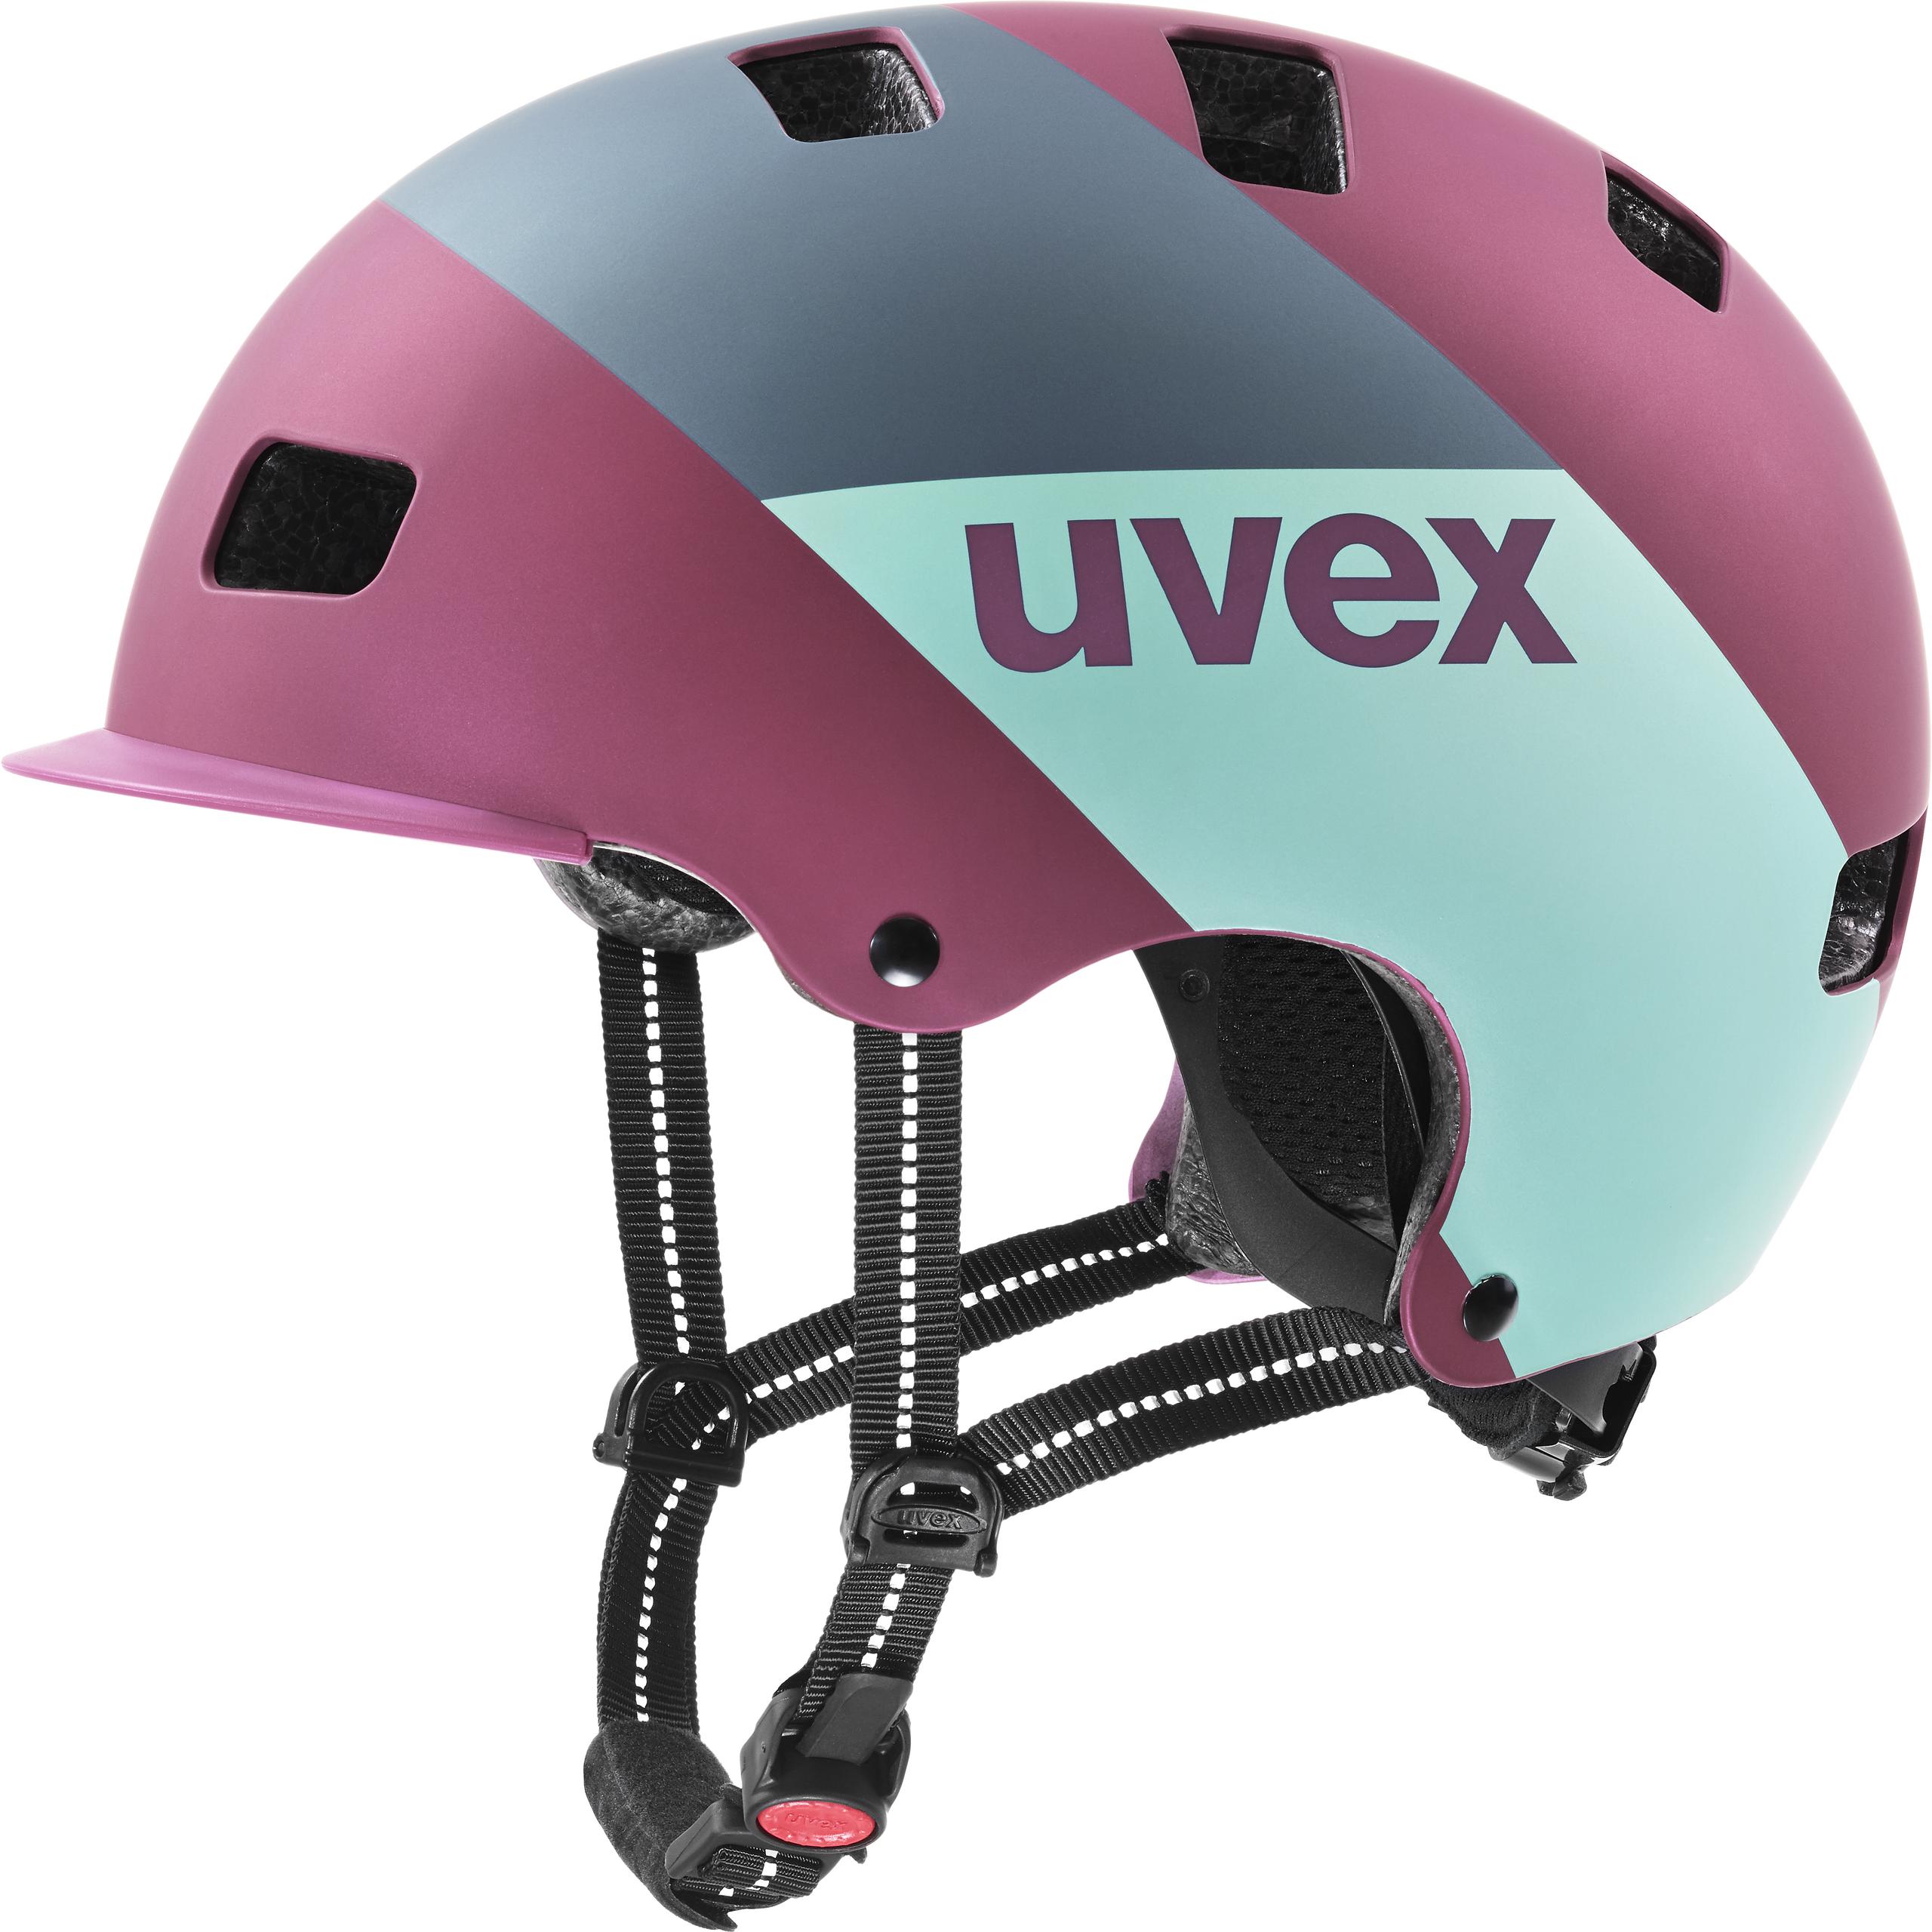 uvex hlmt 5 pro core green/dark purpl Skihelm Snowboardhelm Helm Wintersporthelm 